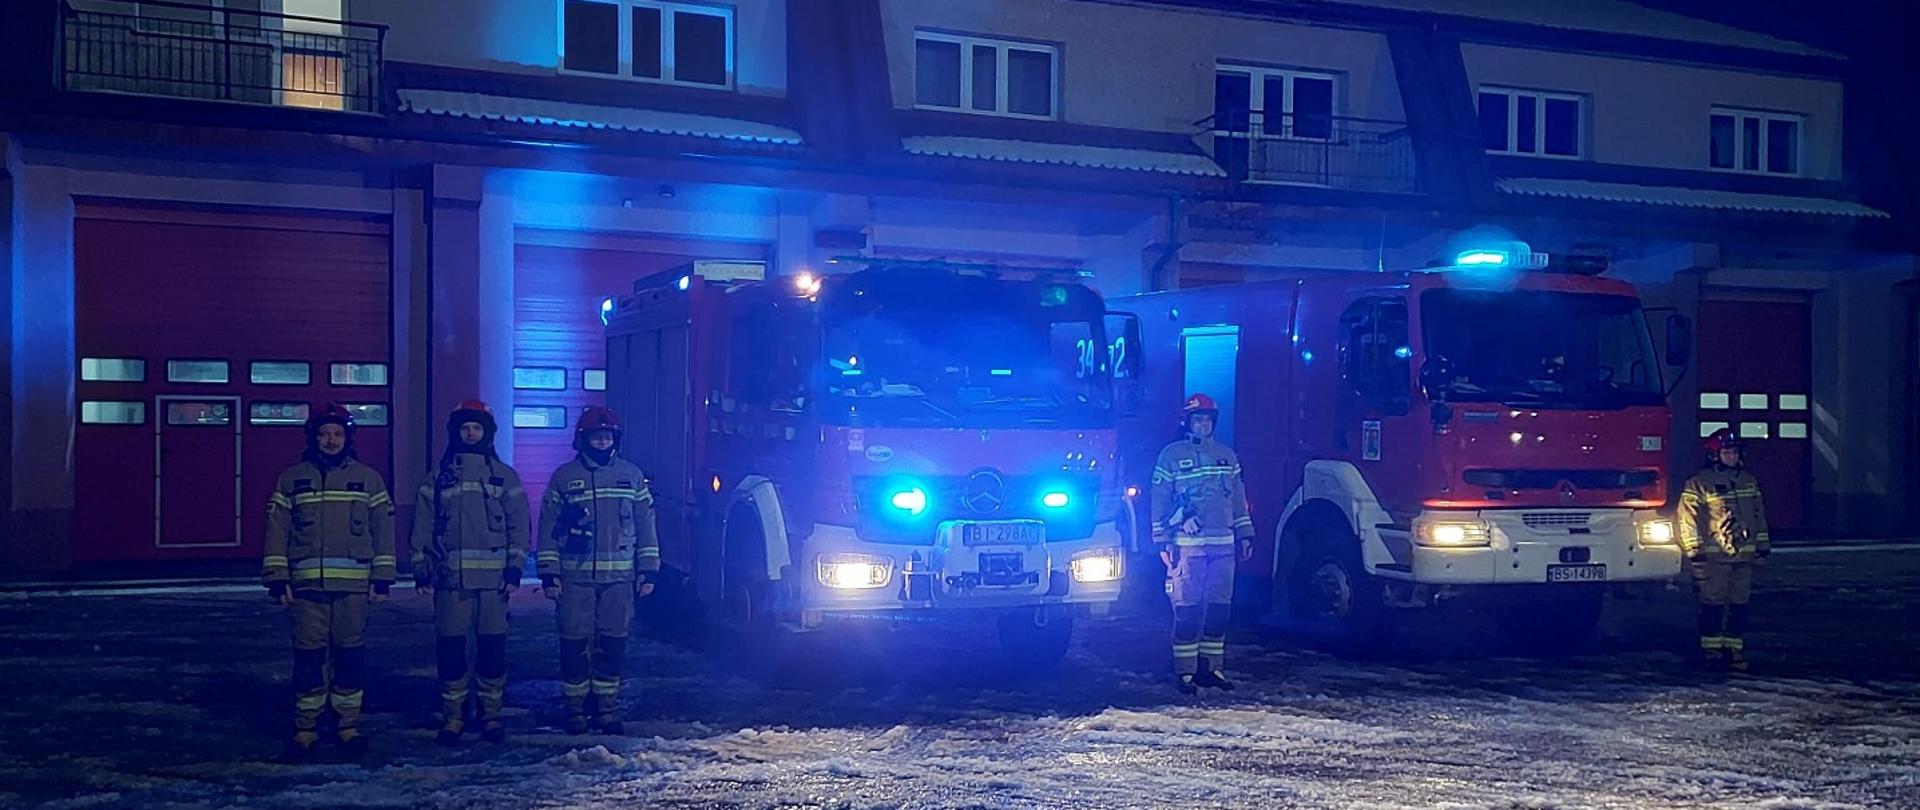 Zdjęcie obrazuje strażaków, samochody pożarnicze w tle budynek w porze nocnej.